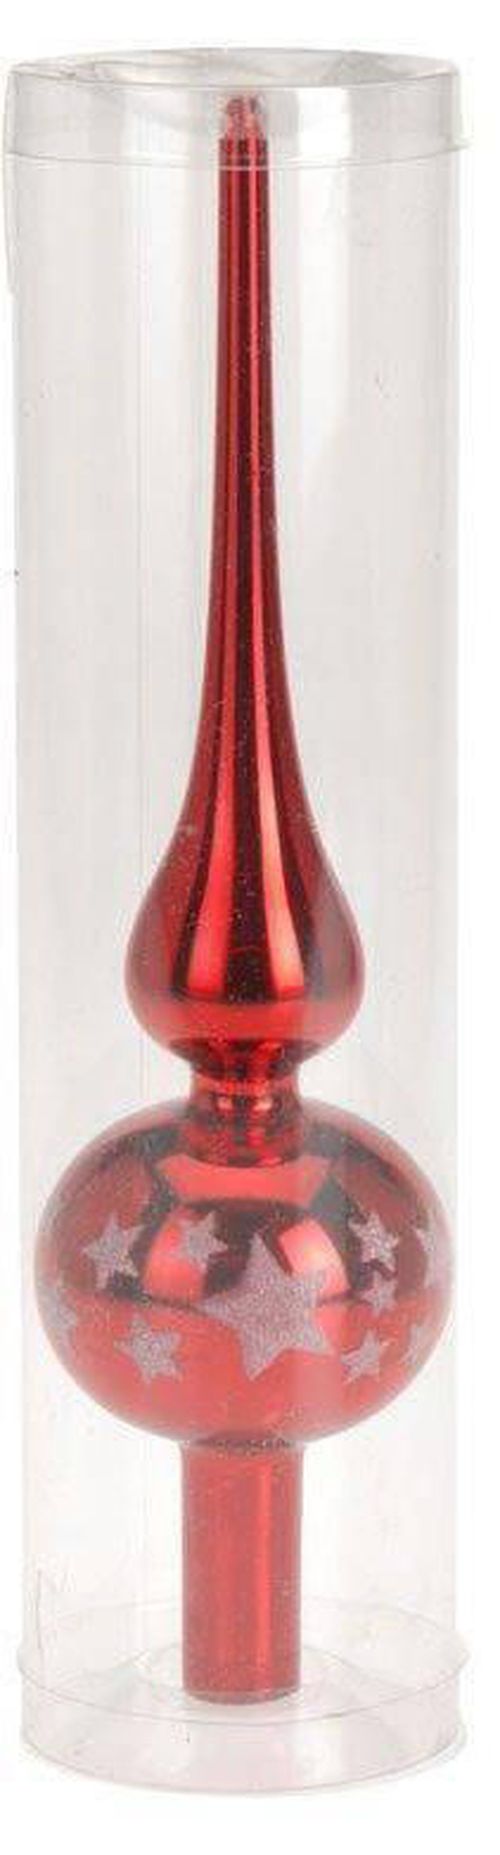 купить Новогодний декор Promstore 34300 Верхушка елочная стеклянная 25сm, красная в Кишинёве 